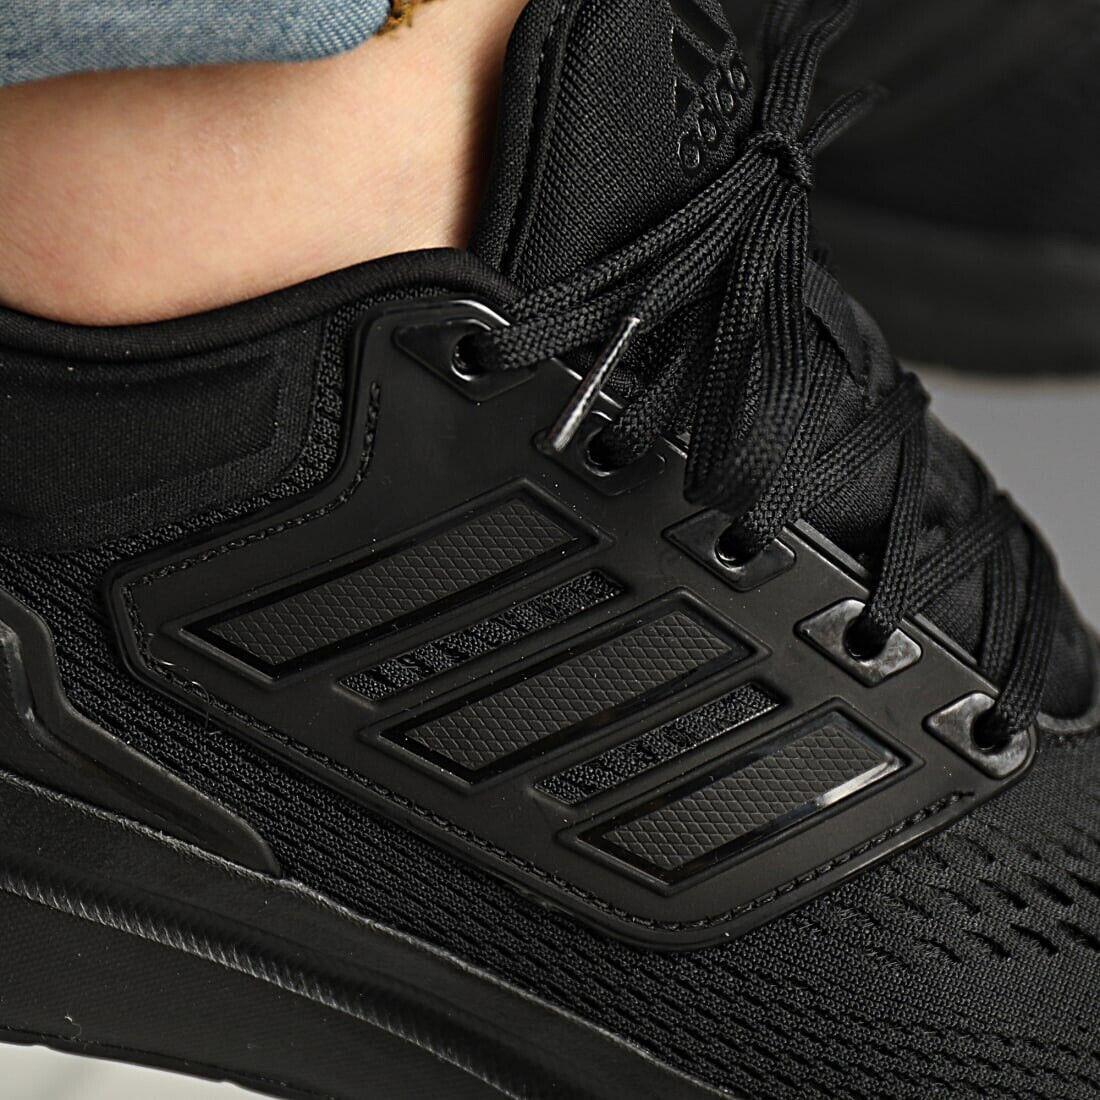 Adidas shoes  - Black 7